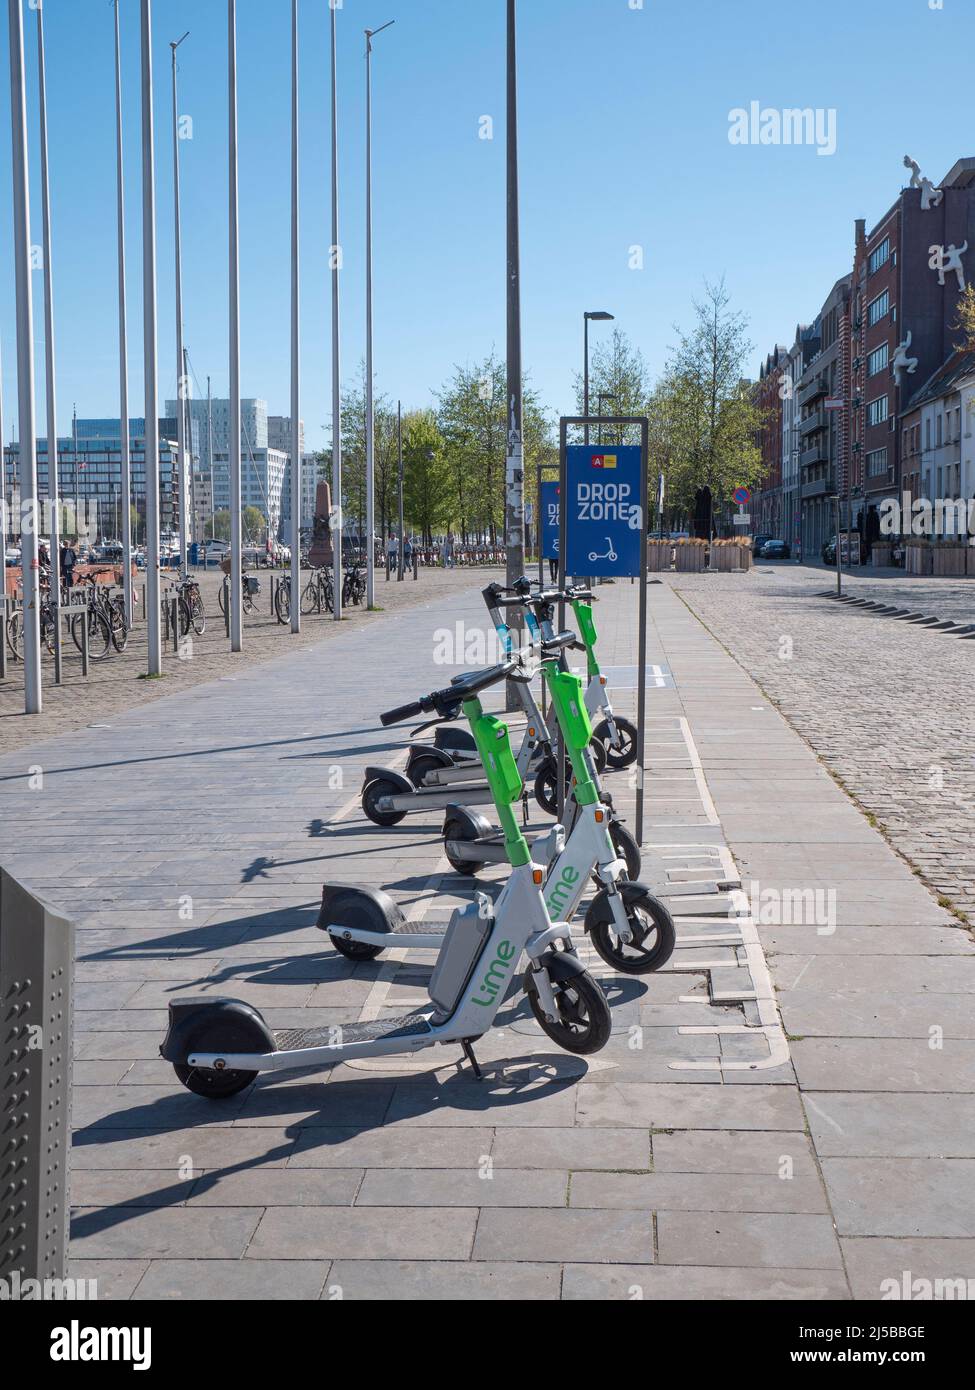 Anvers, Belgique, le 17 avril 2020, partagent des scooters dans la ville d'Anvers dans une zone de dépôt Banque D'Images